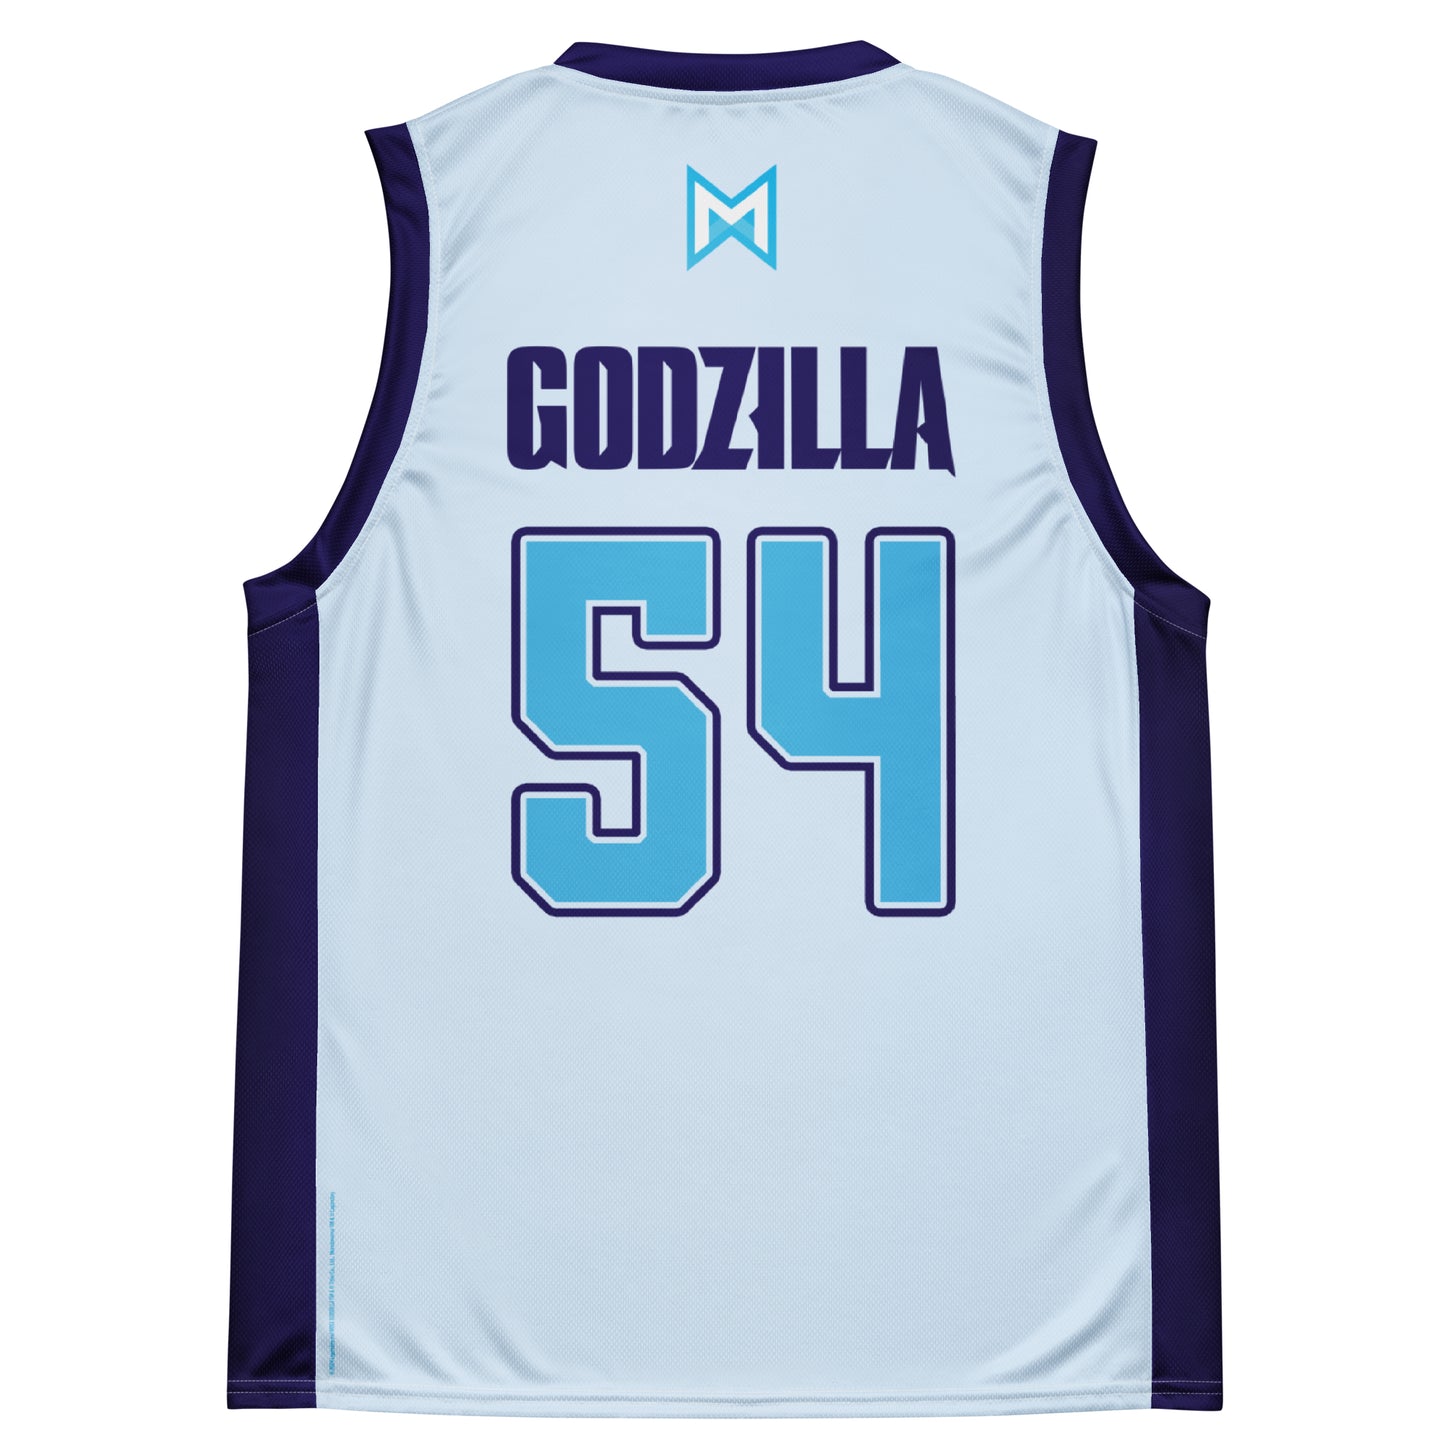 Monsterverse Godzilla x Kong: Team Godzilla 54 Basketball Jersey